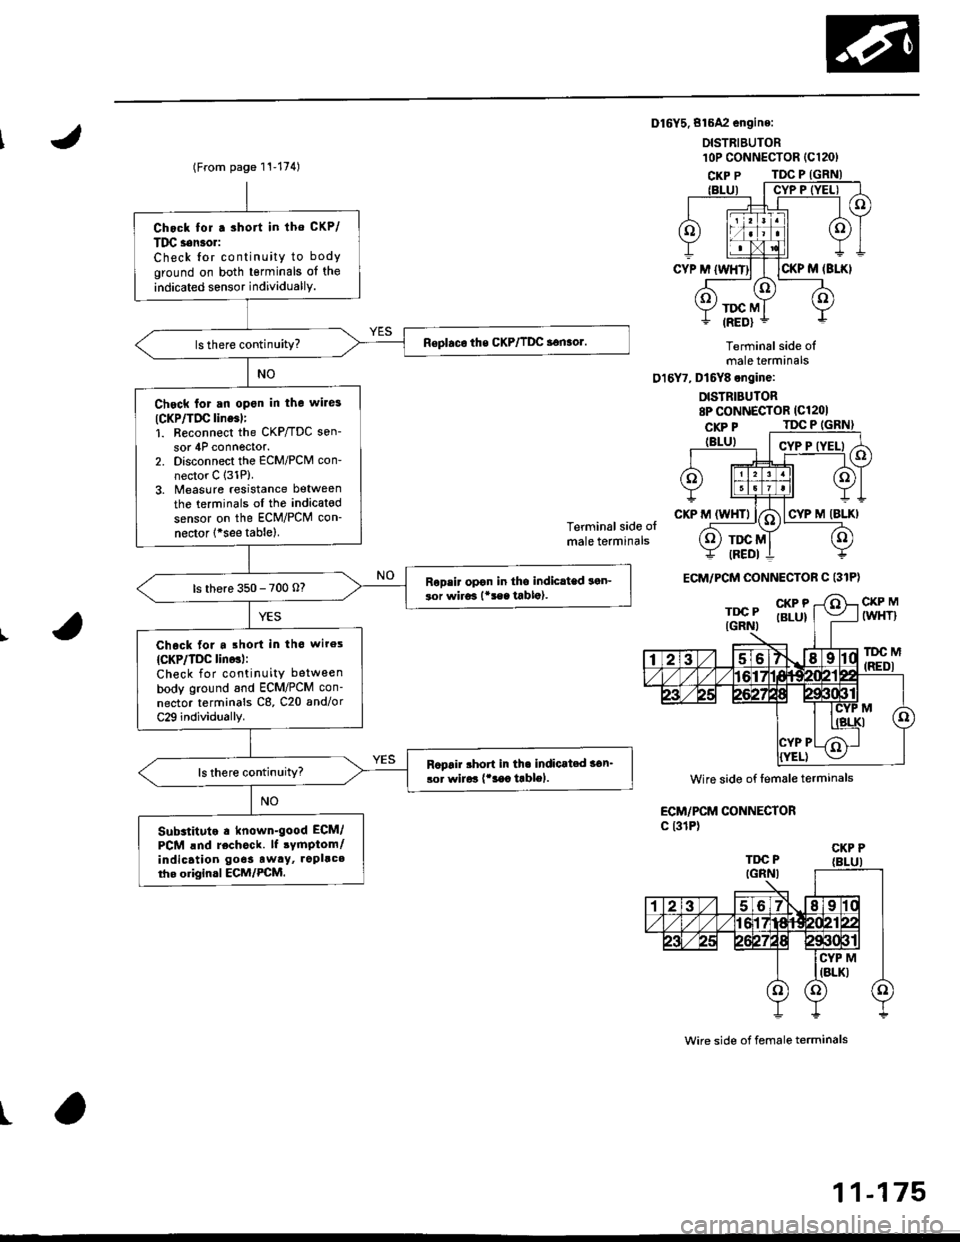 HONDA CIVIC 1996 6.G Workshop Manual Dl6Y5.816A2 engine:
DISTRIEUTOR
Terminal side olmale terminals
016Y7, Dt6Y8 engine:
DISTRIBUTOR8P CONNECTOR (Cl201
Terminal side olmale terminals
CKP MIWHT}
lDC M(REDI
ECM/PCM CONNECTORc l31P)
wire si